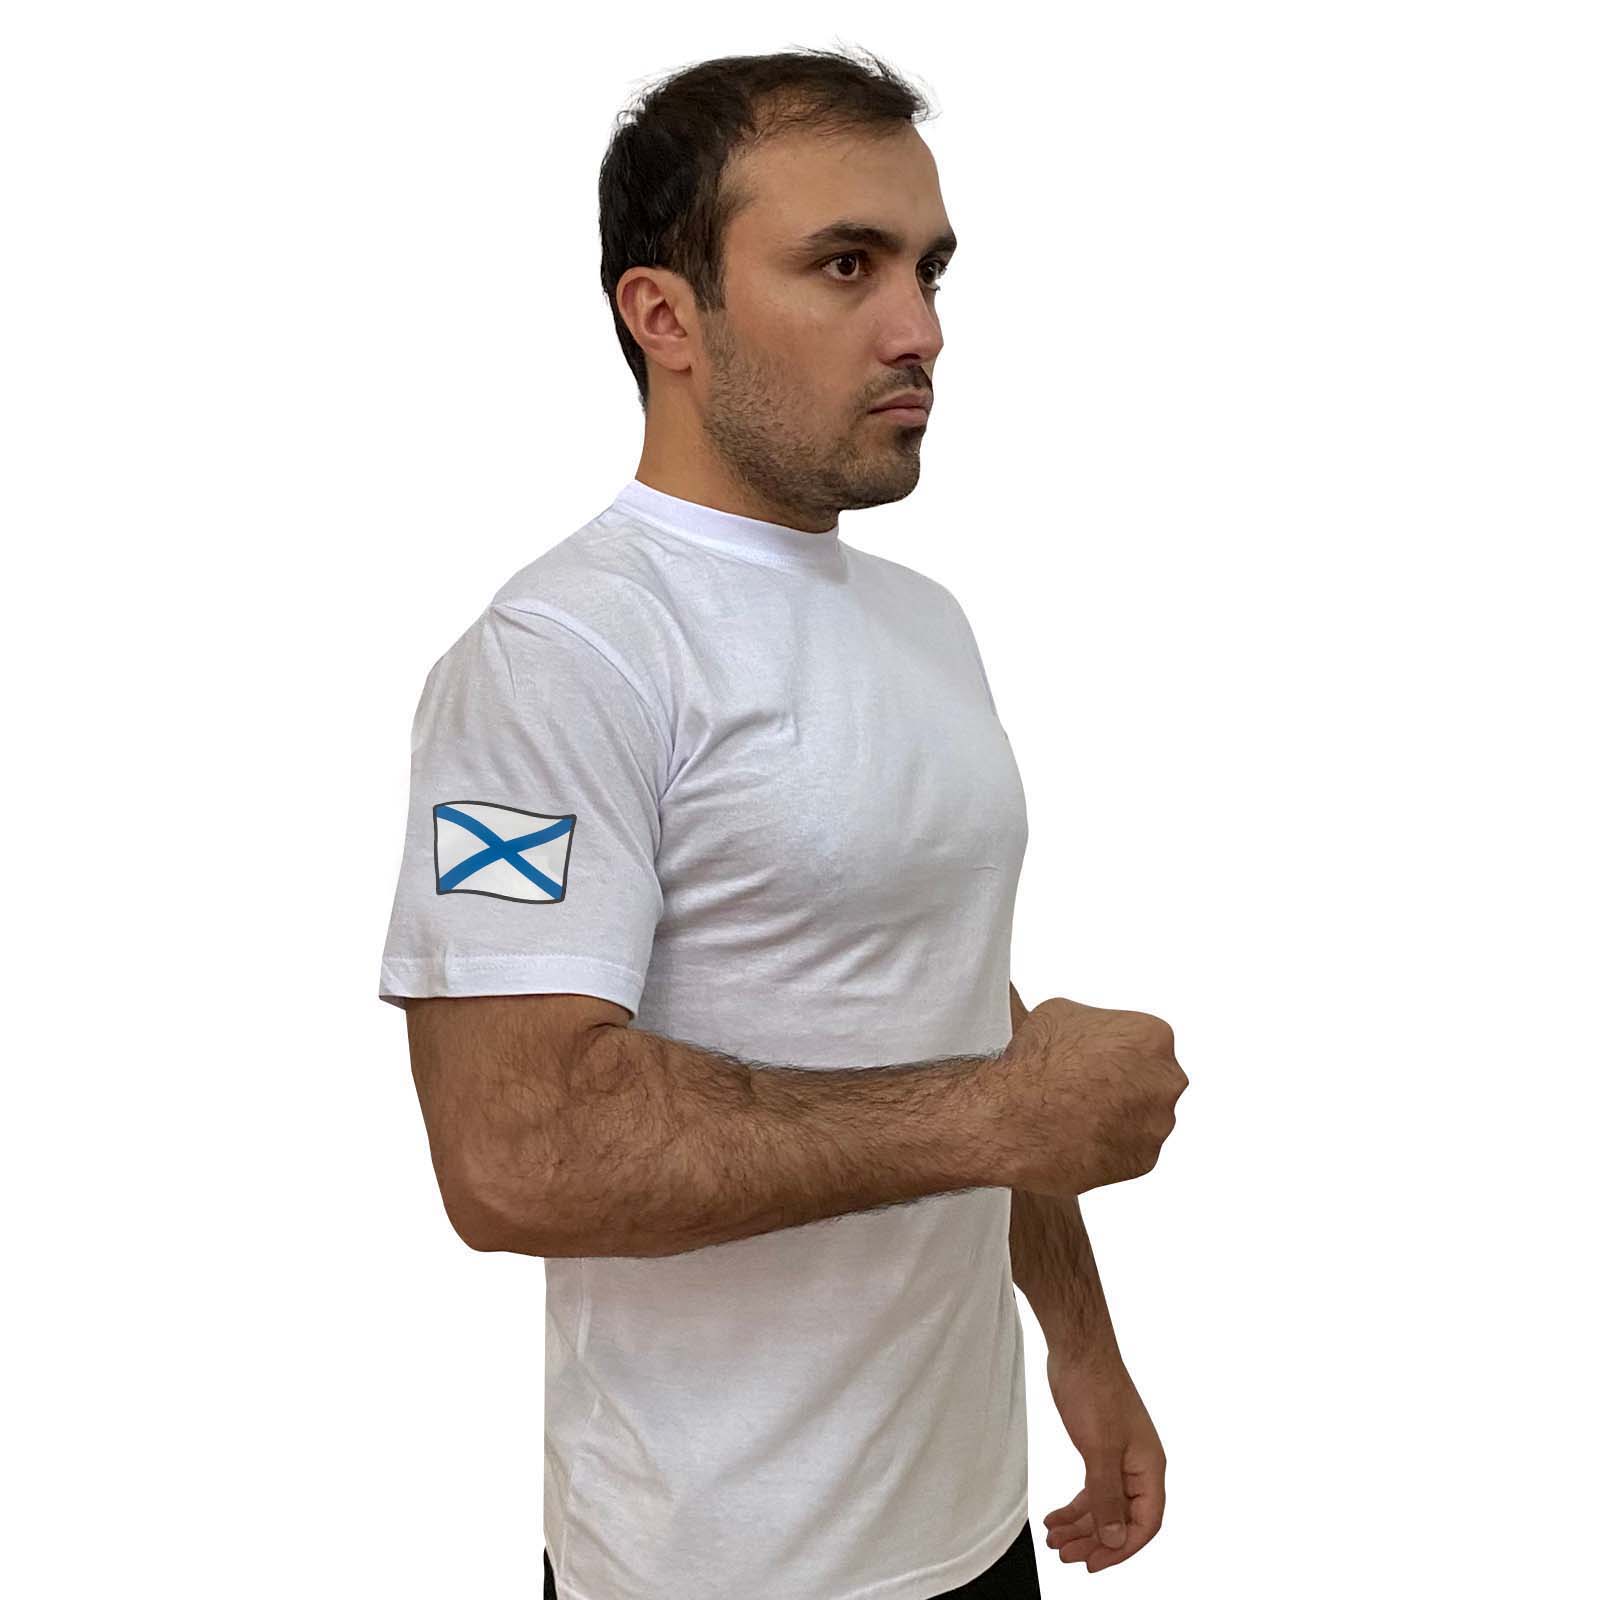 Купить мужскую белую футболку с термотрансфером Андреевский флаг онлайн